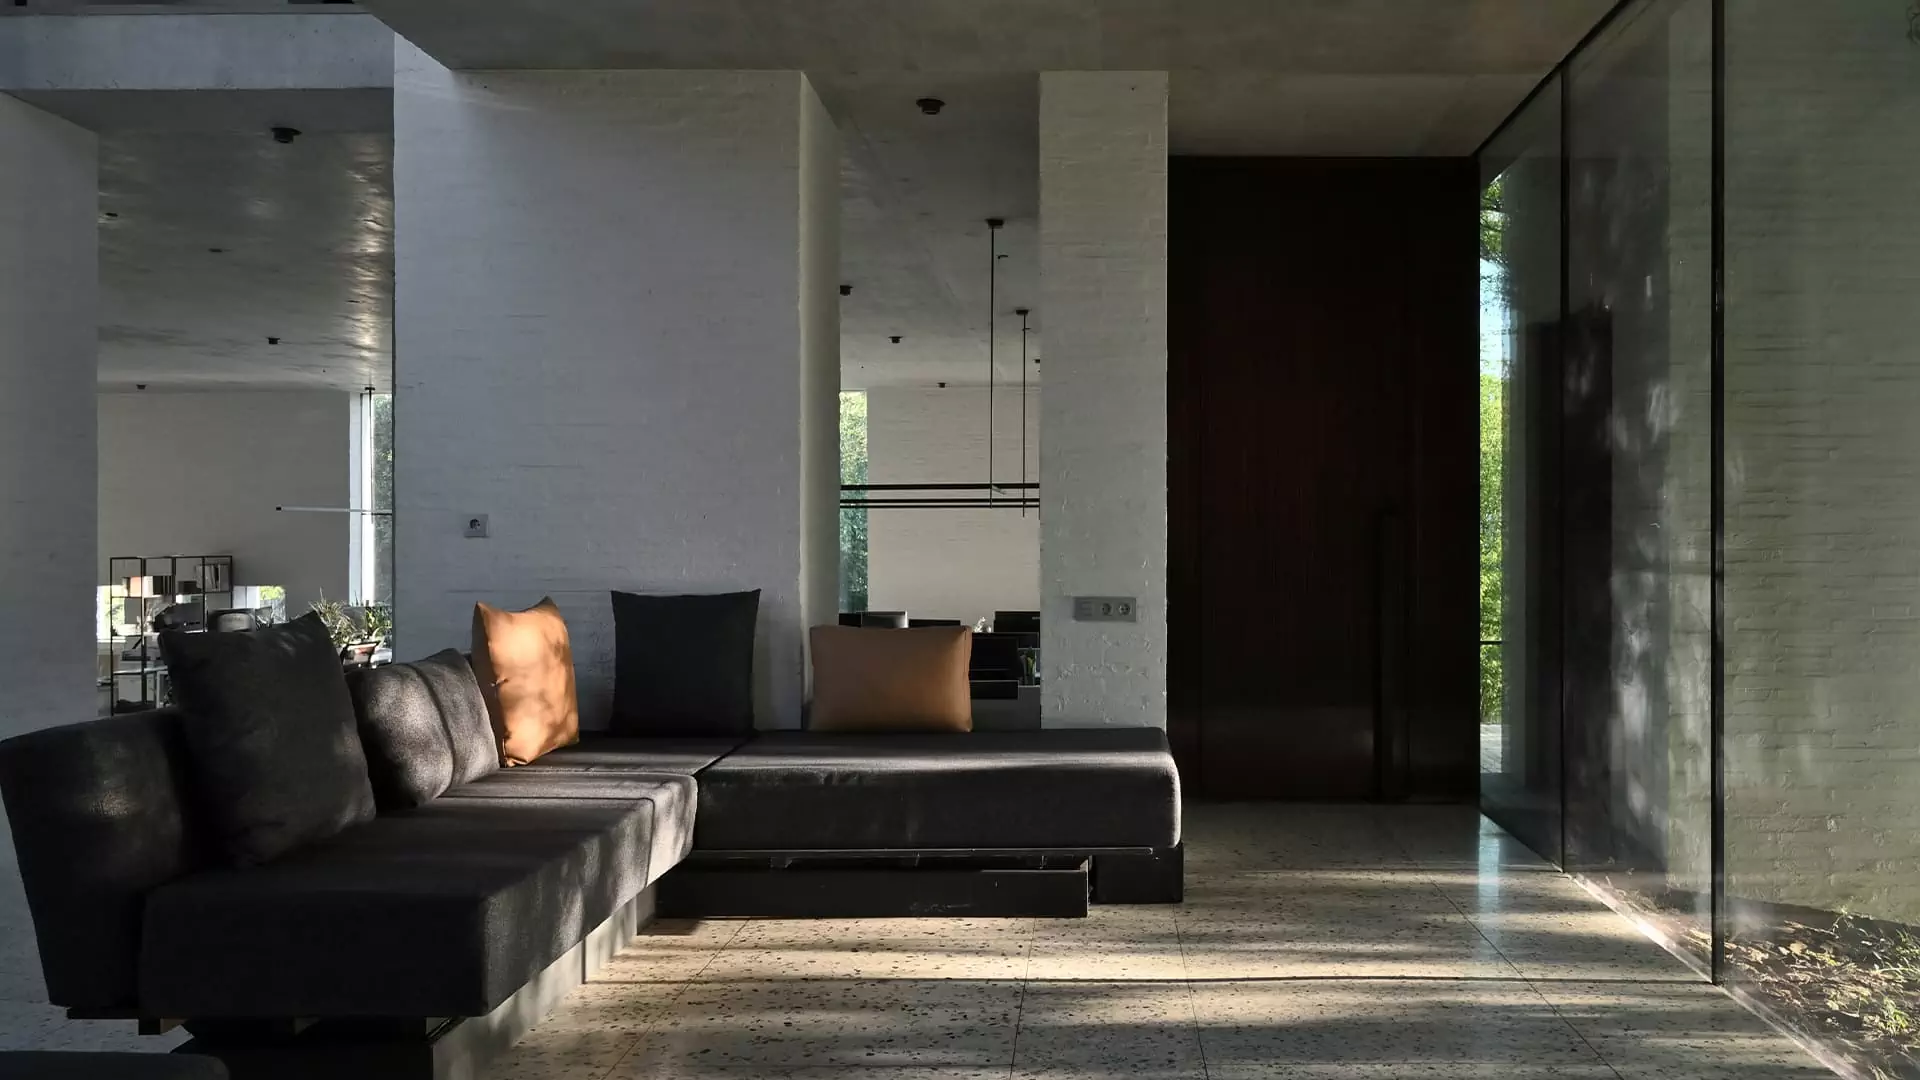 Спокойные бетонные поверхности и окна без рам в интерьере офиса архитекторов — проект архитектурного бюро Chado